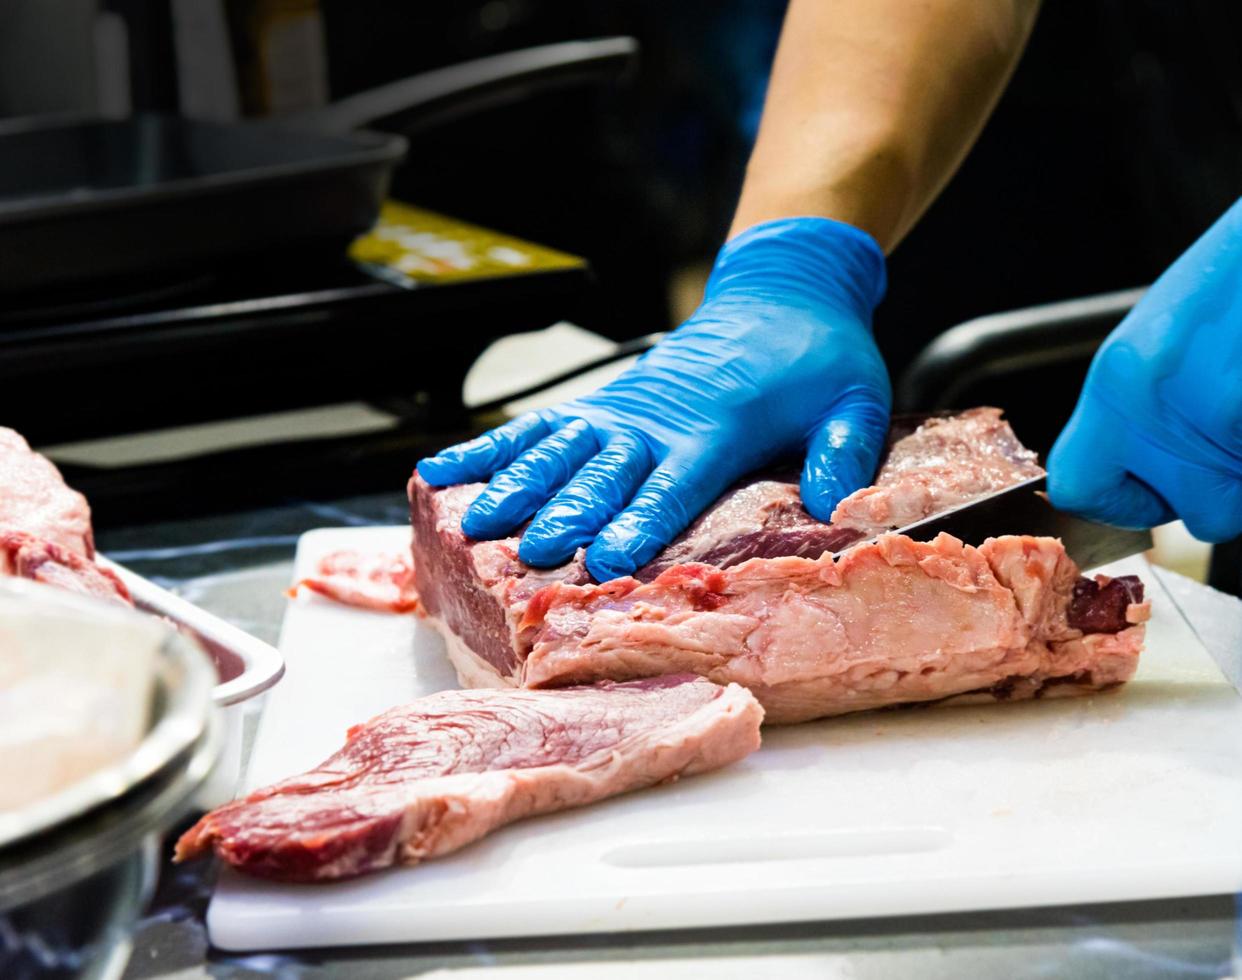 le chef coupe la viande crue avec un couteau sur une planche, le cuisinier coupe la viande crue photo